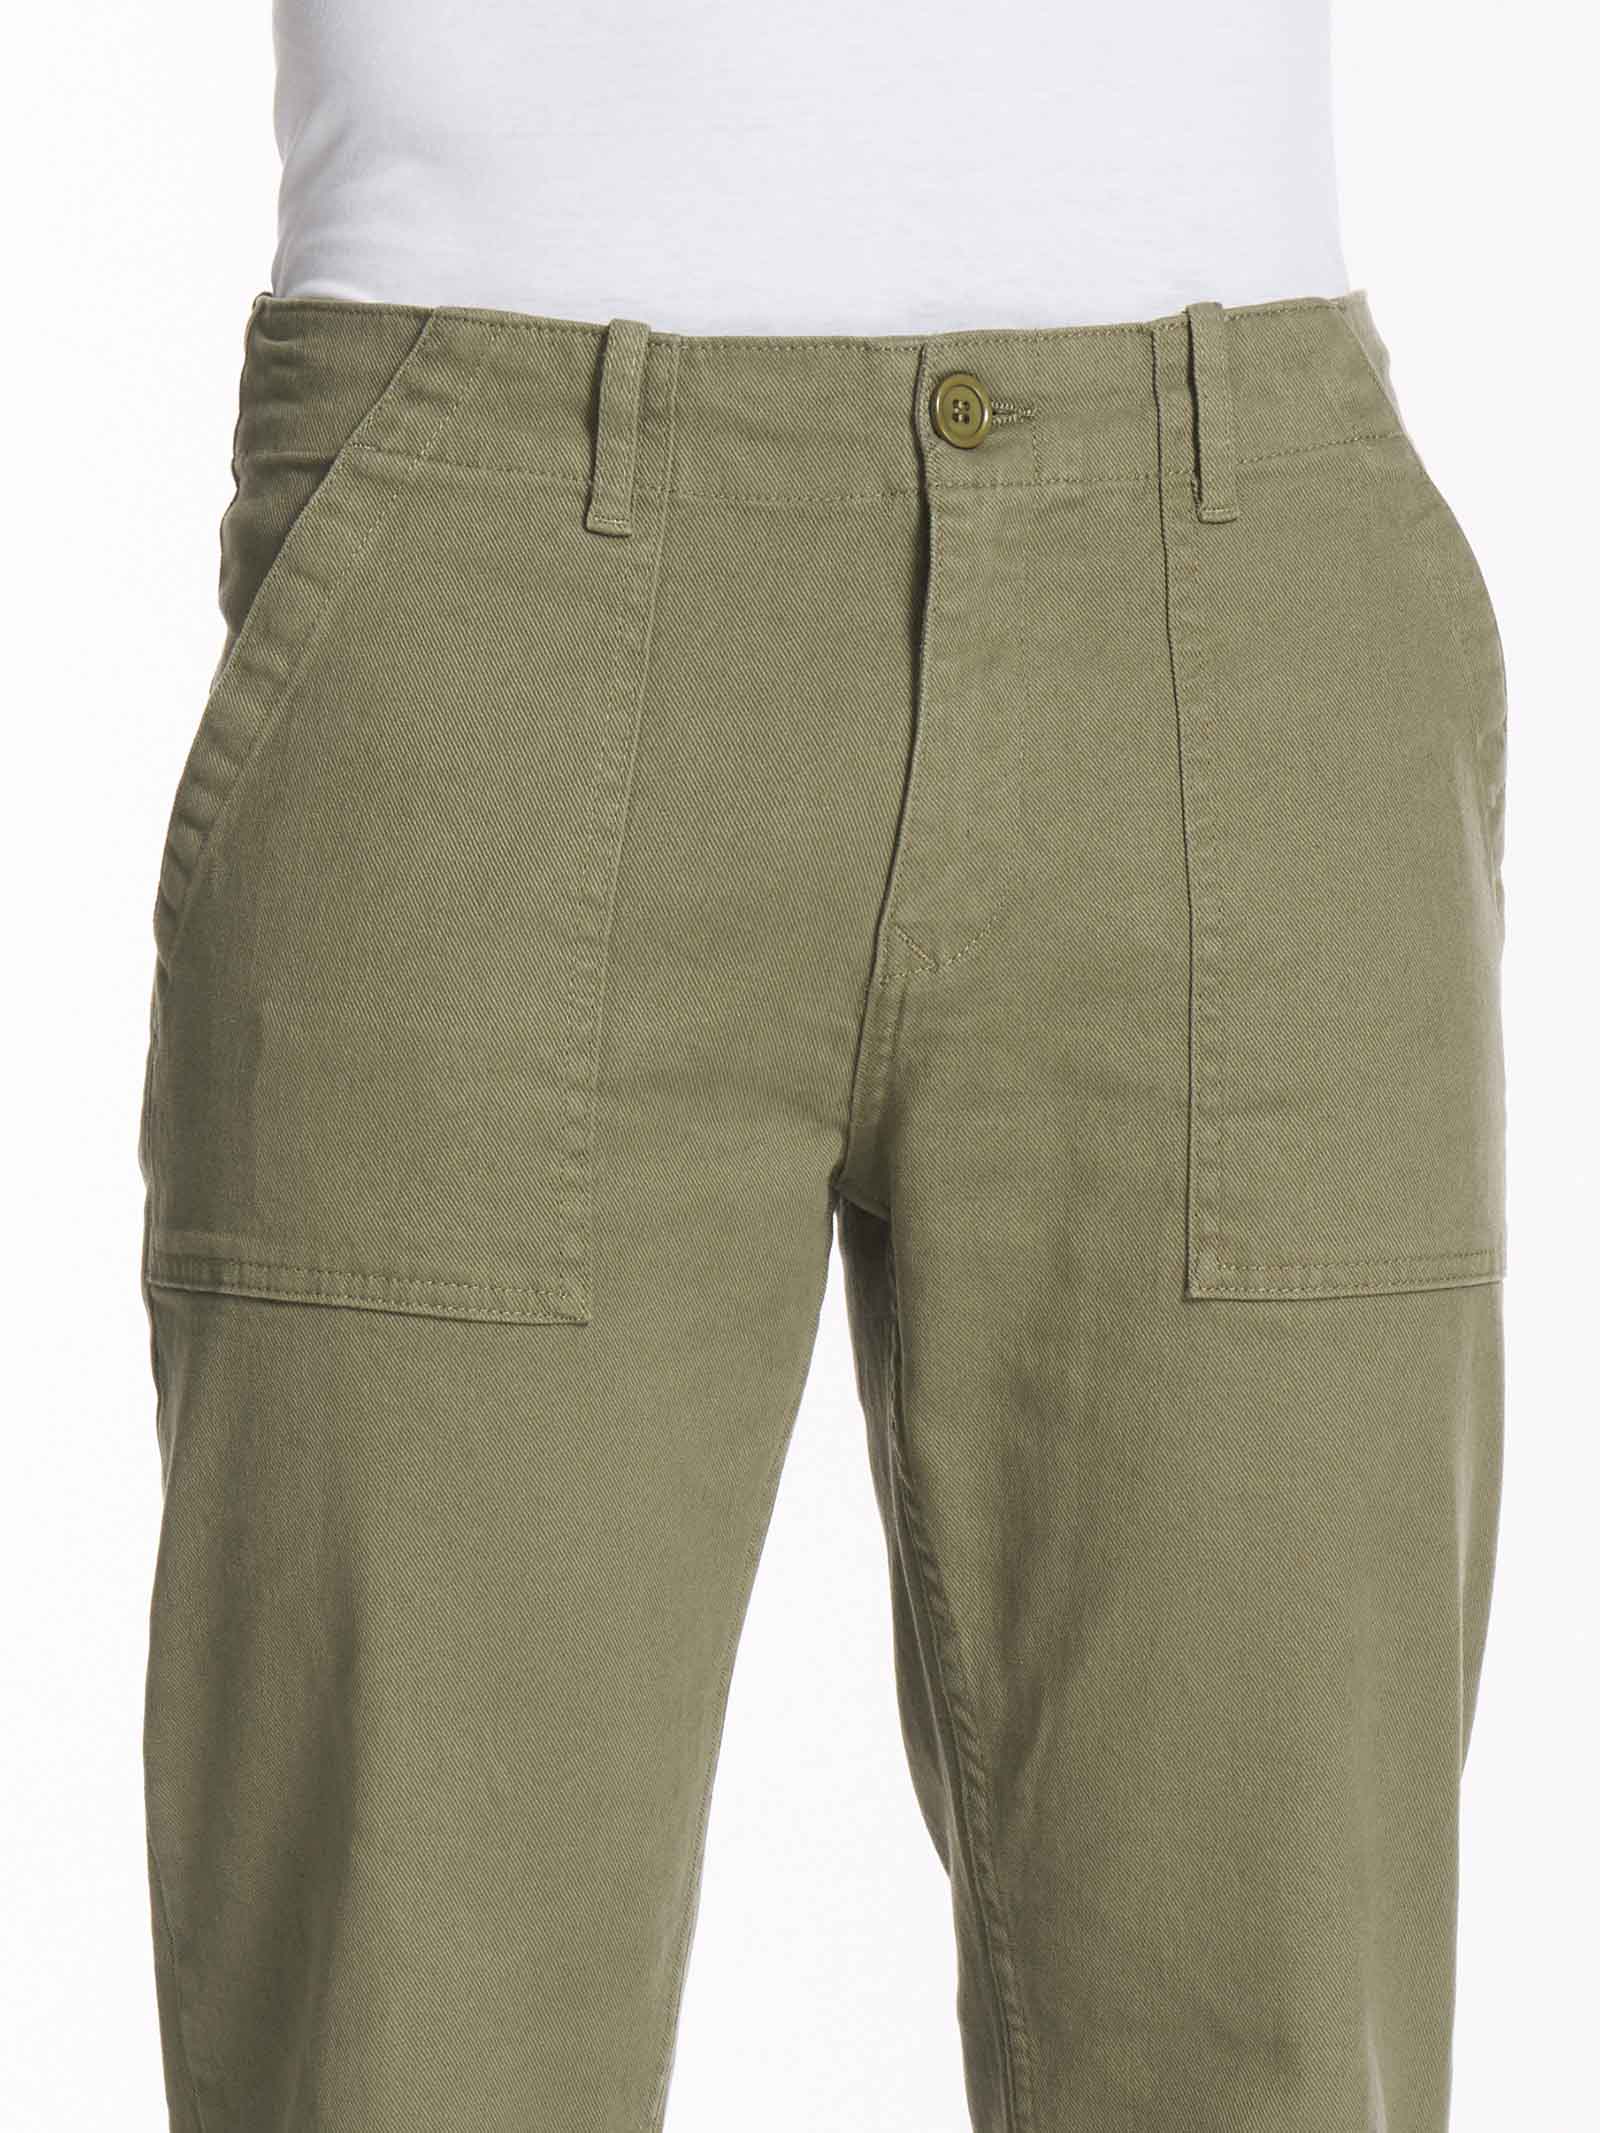 Pantalone Chino in cotone elasticizzato raw -  - Ragno